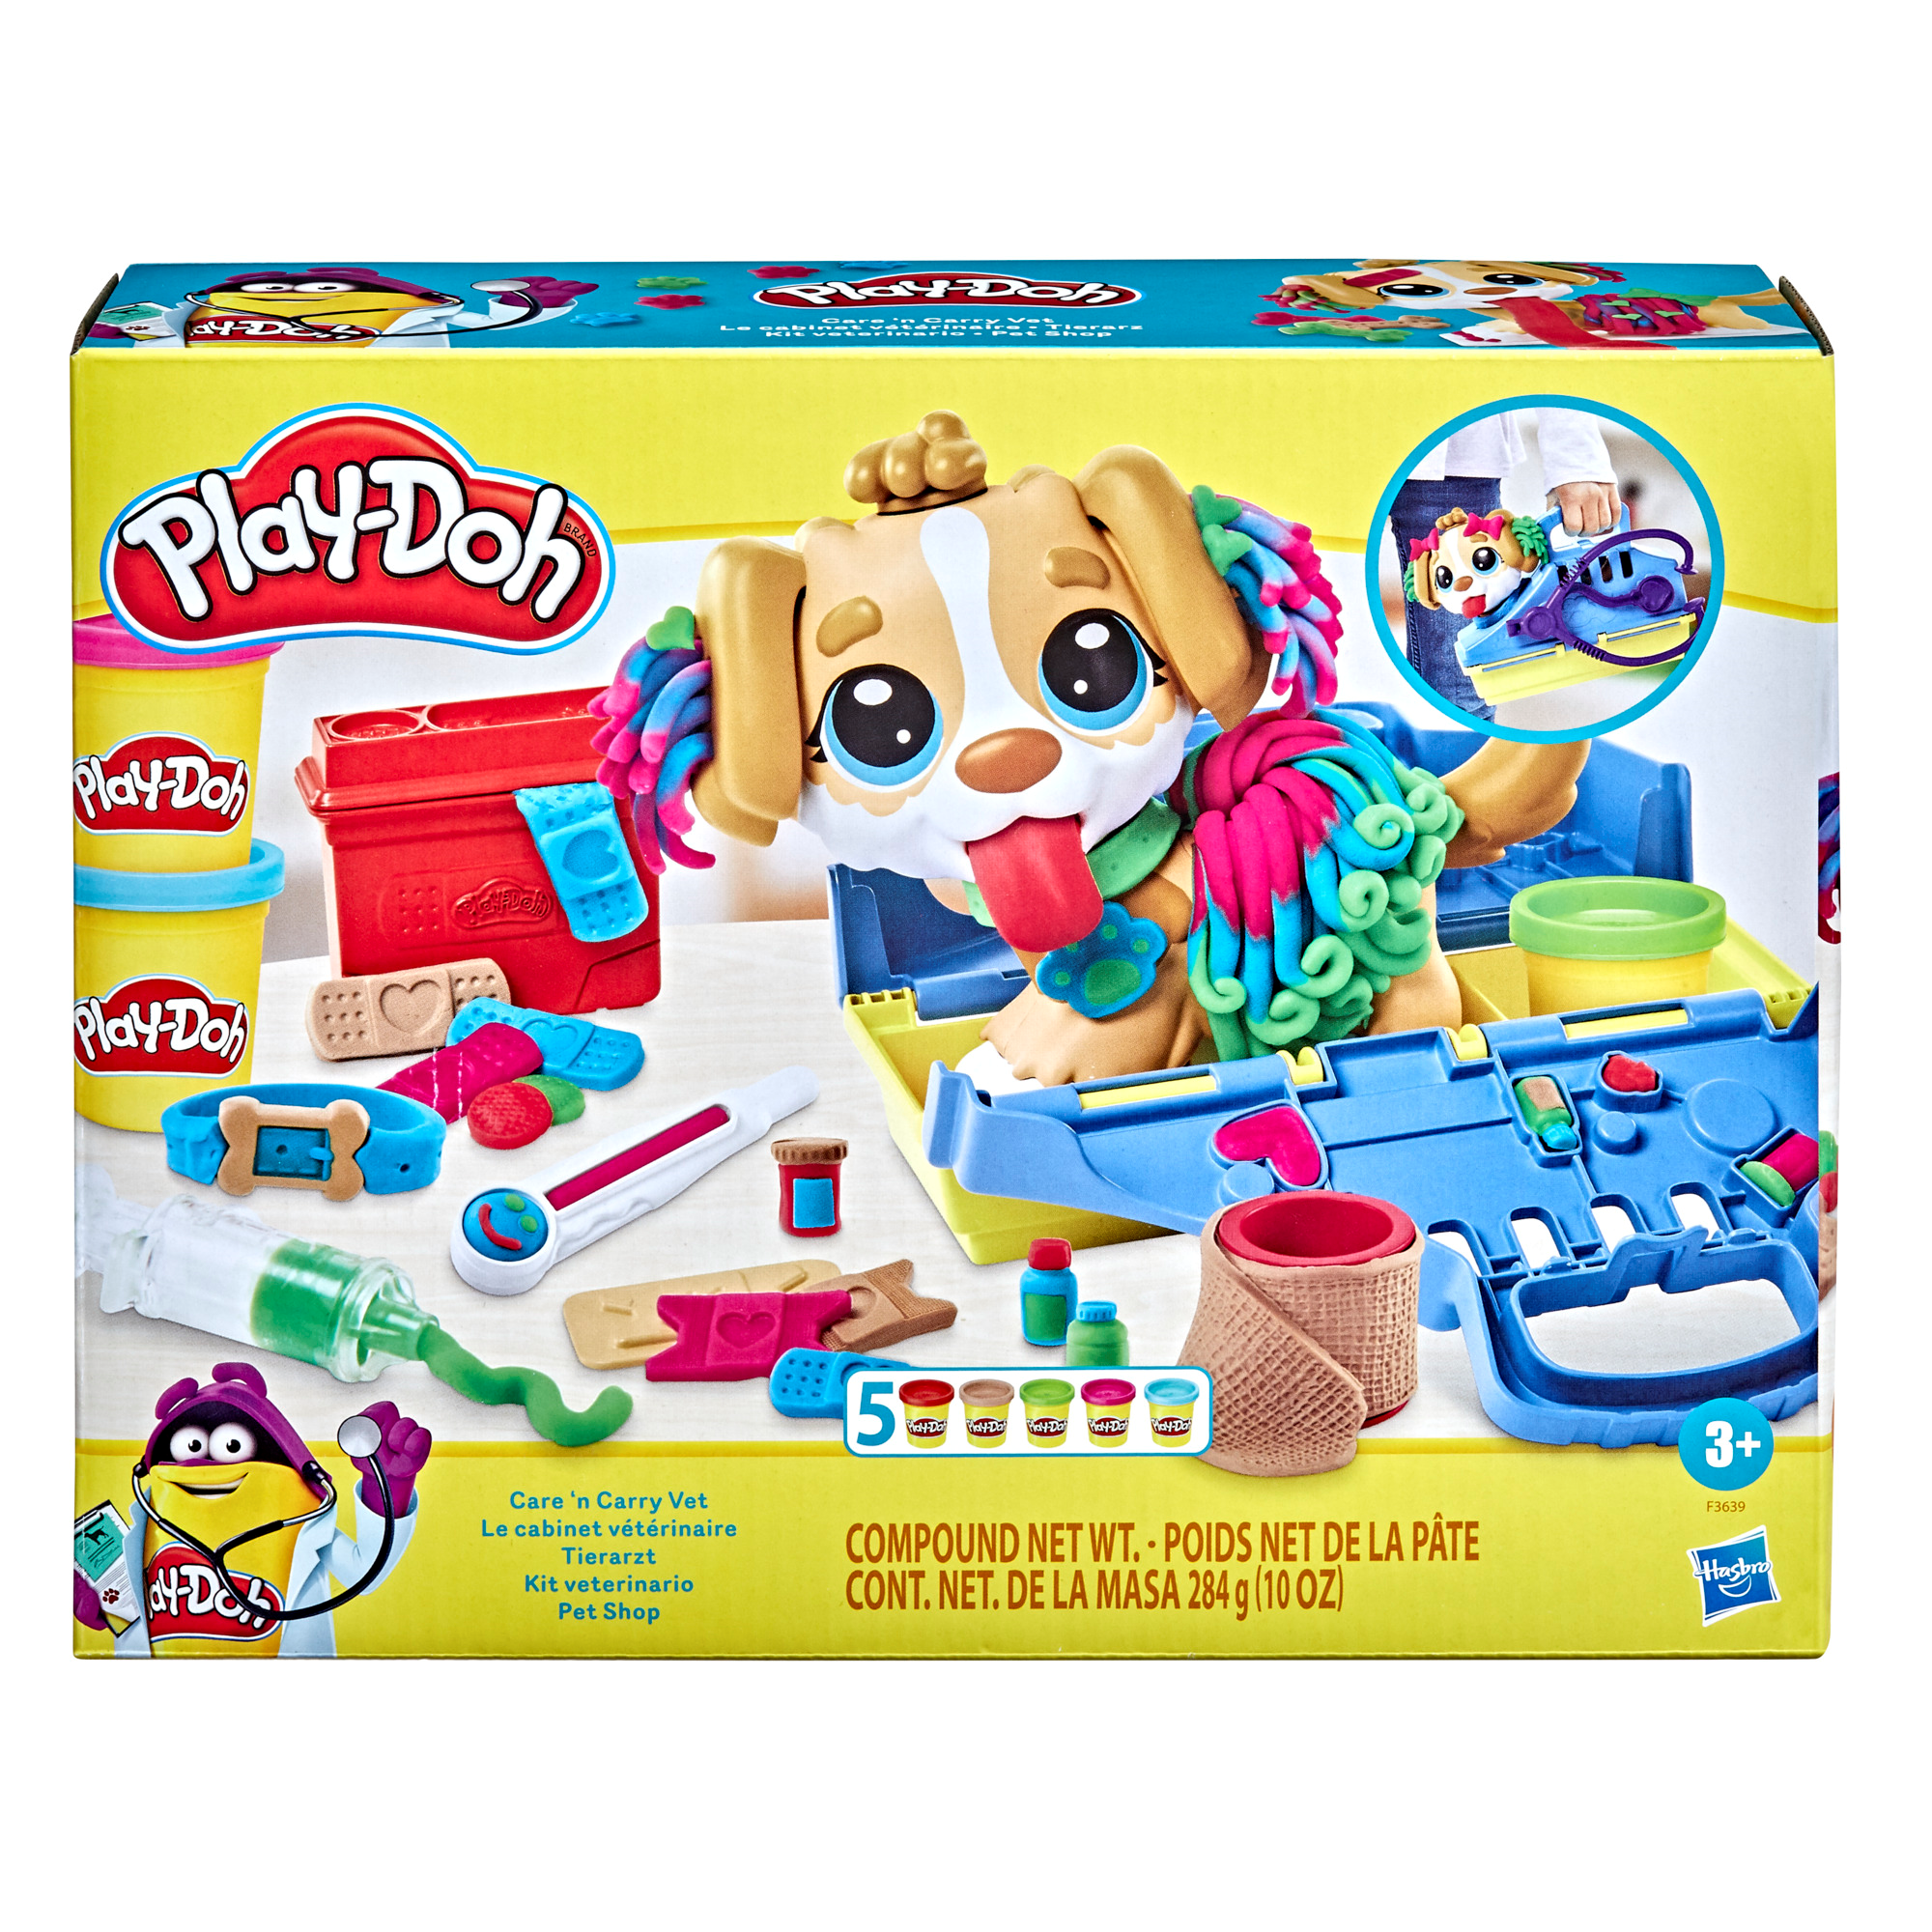 Play-doh - set da veterinario, playset con 10 strumenti e 5 colori di pasta da modellare atossica, cane giocattolo per bambini dai 3 anni in su - PLAY-DOH